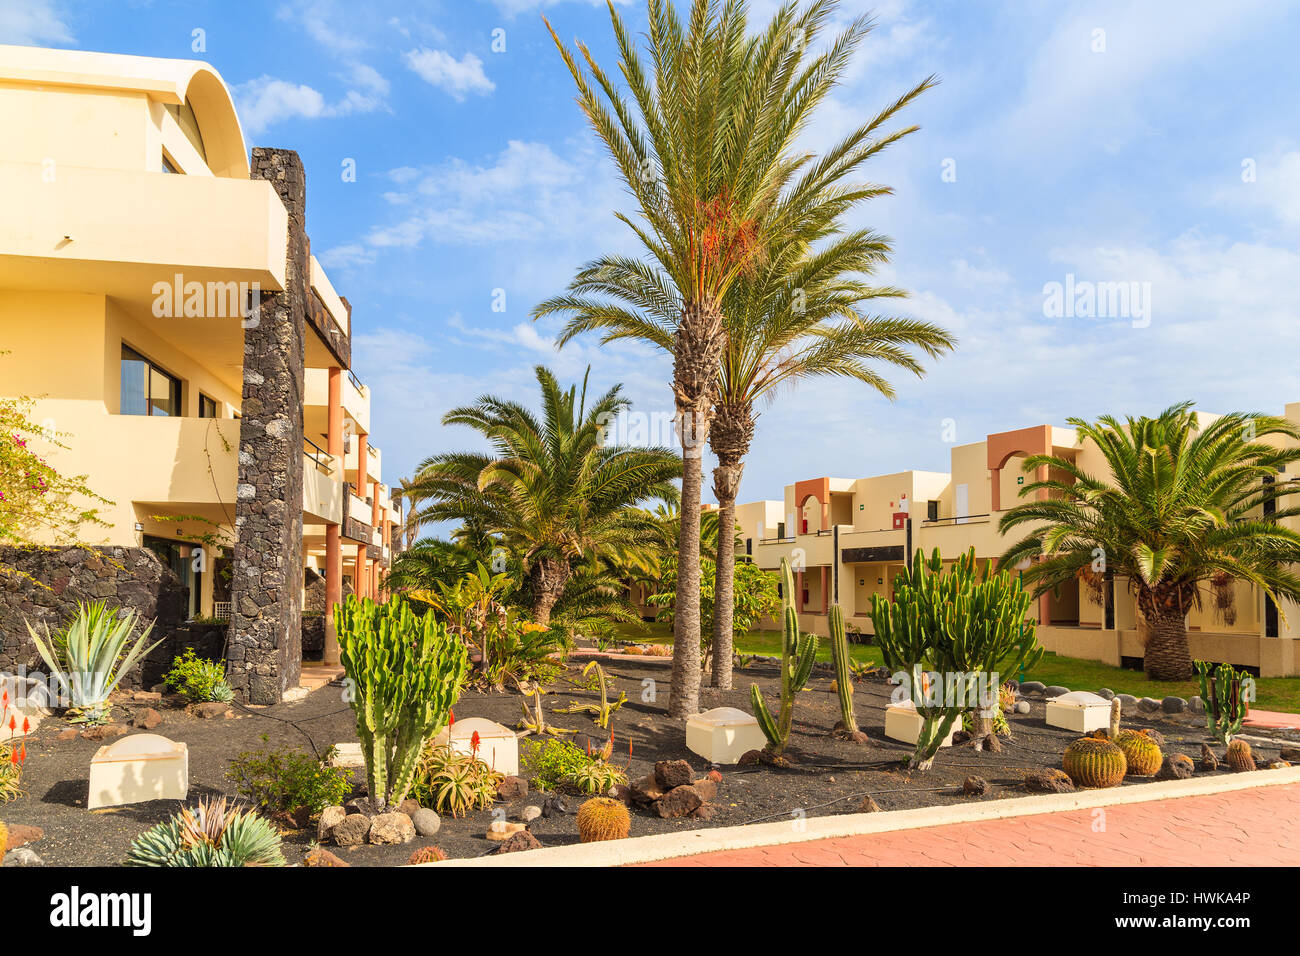 PLAYA BLANCA, LANZAROTE ISLAND - JAN 11, 2015: Apartment hotel building tropical gardens in Playa Blanca village, Lanzarote, Canary Islands, Spain. Stock Photo